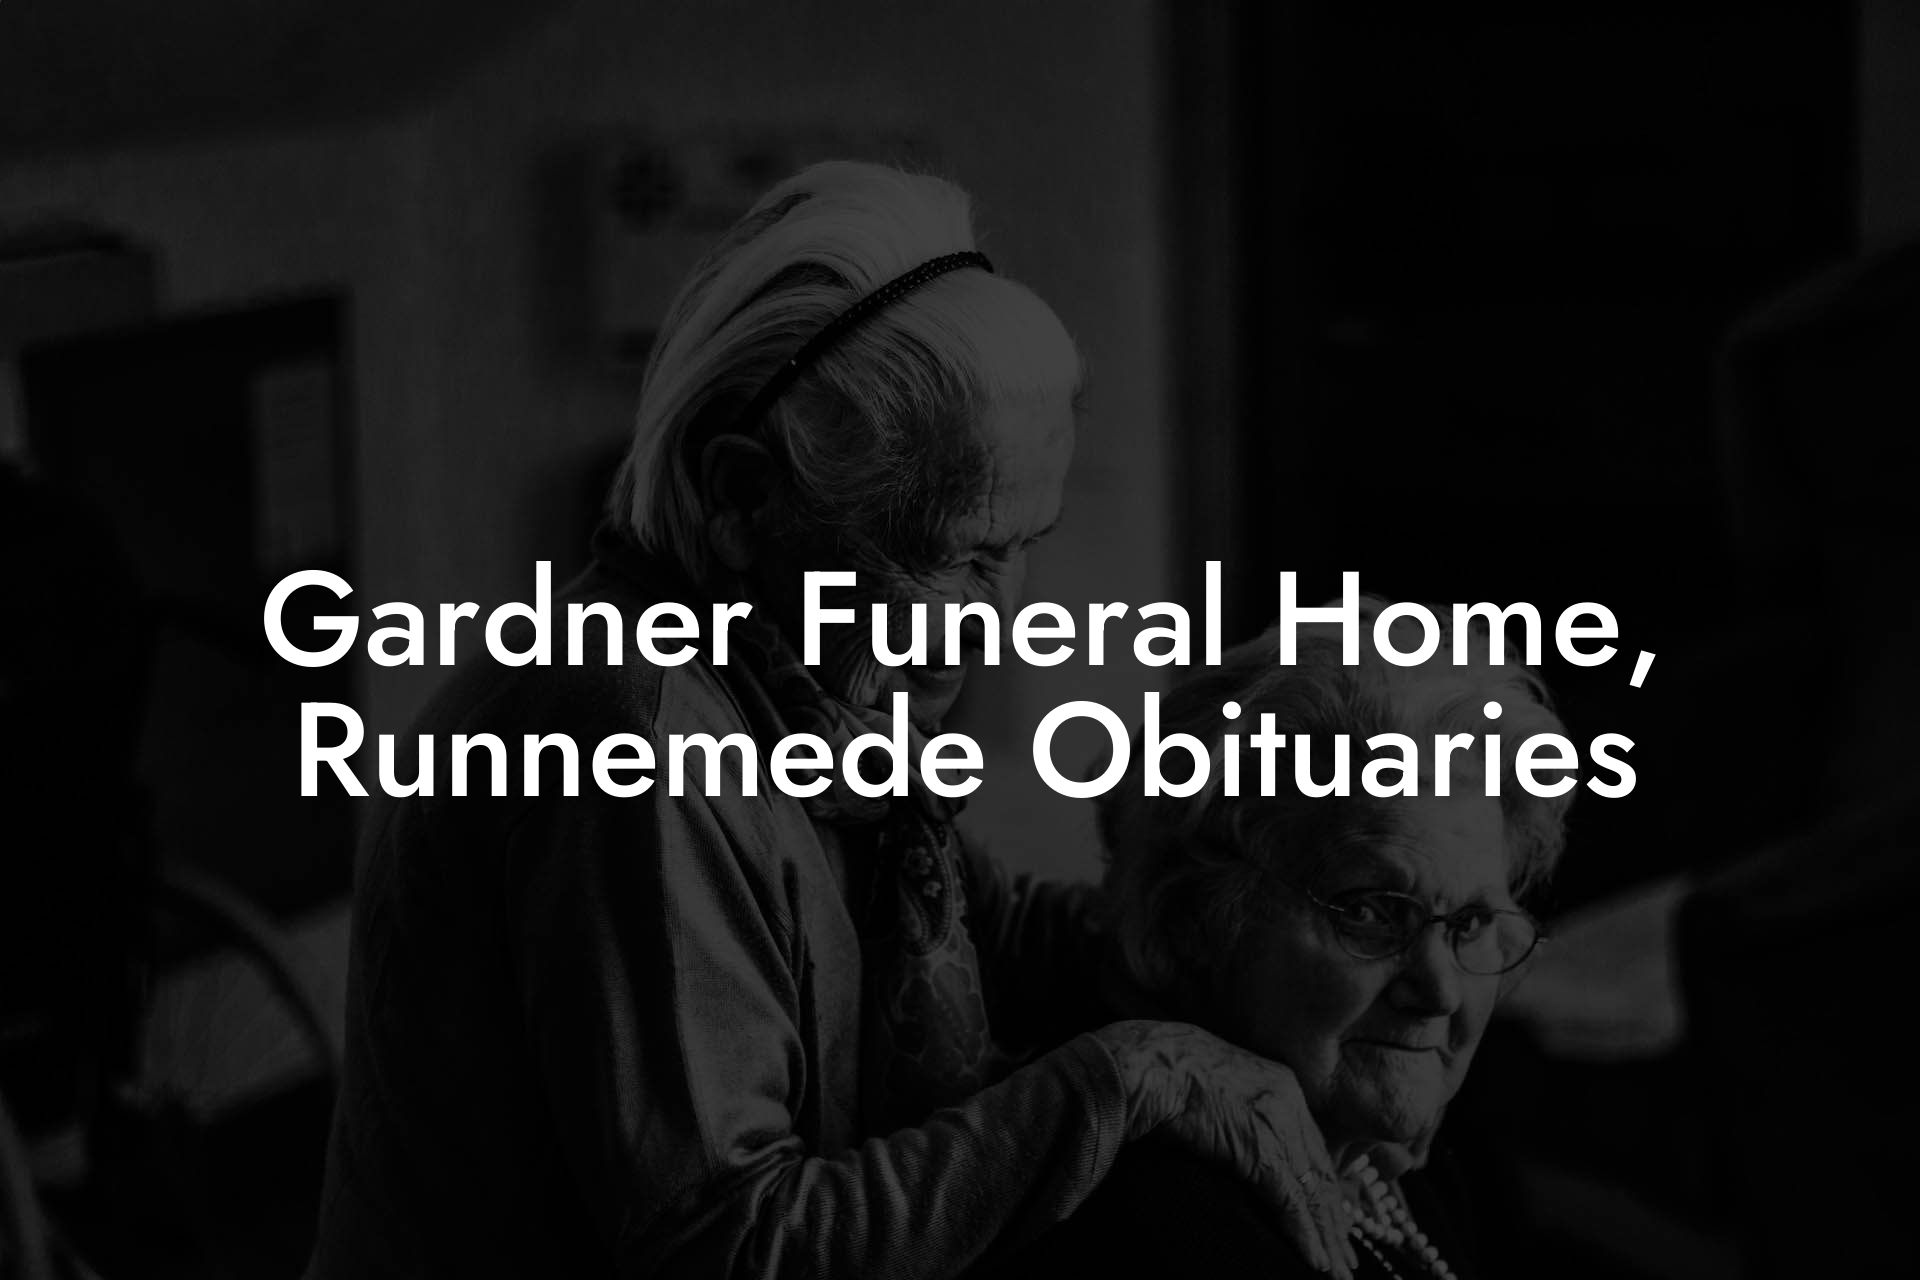 Gardner Funeral Home, Runnemede Obituaries